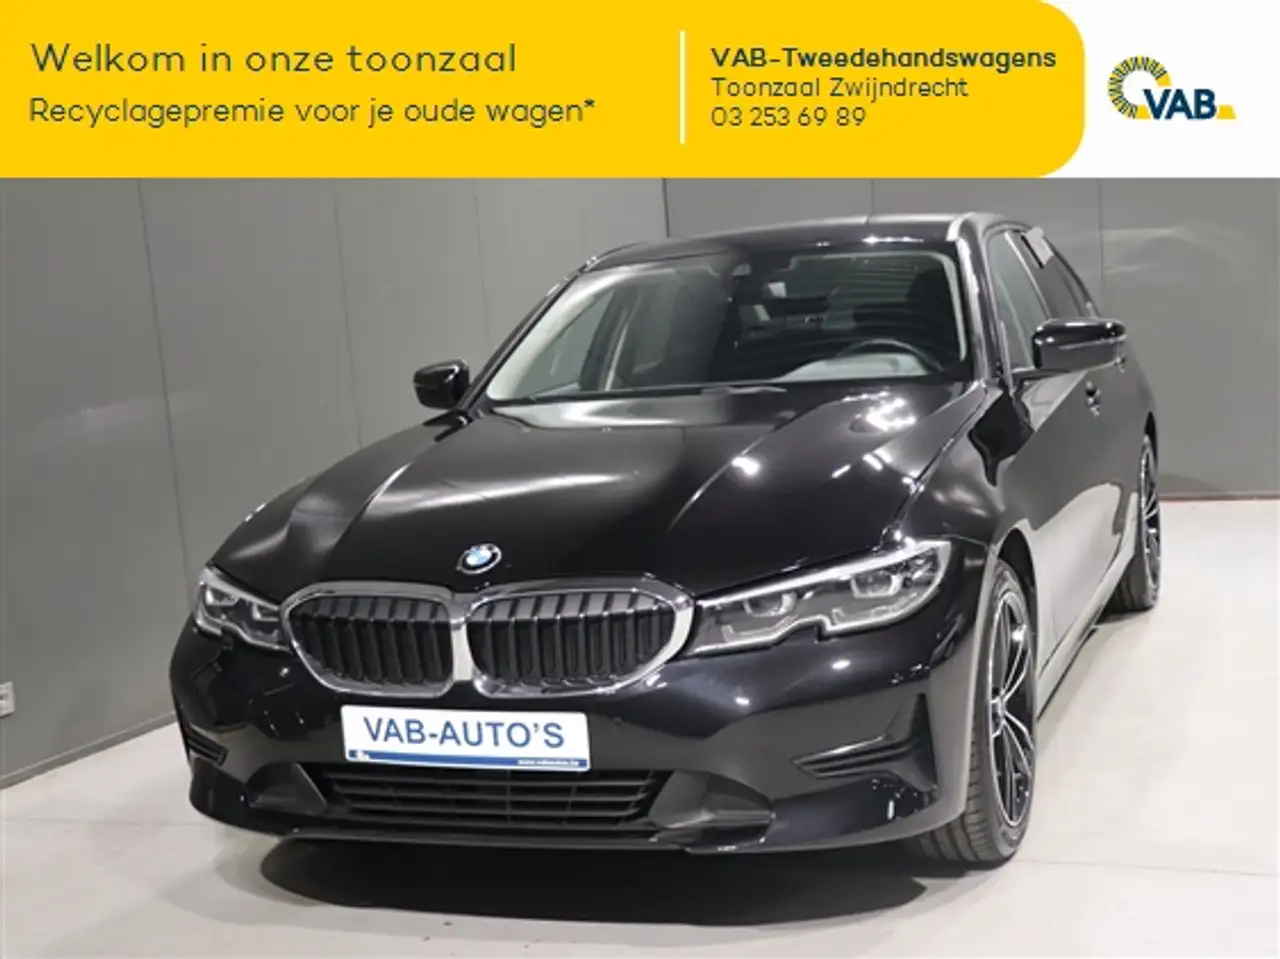 BMW 318 Berline in Zwart tweedehands in Zwijndrecht voor € 23.990,-